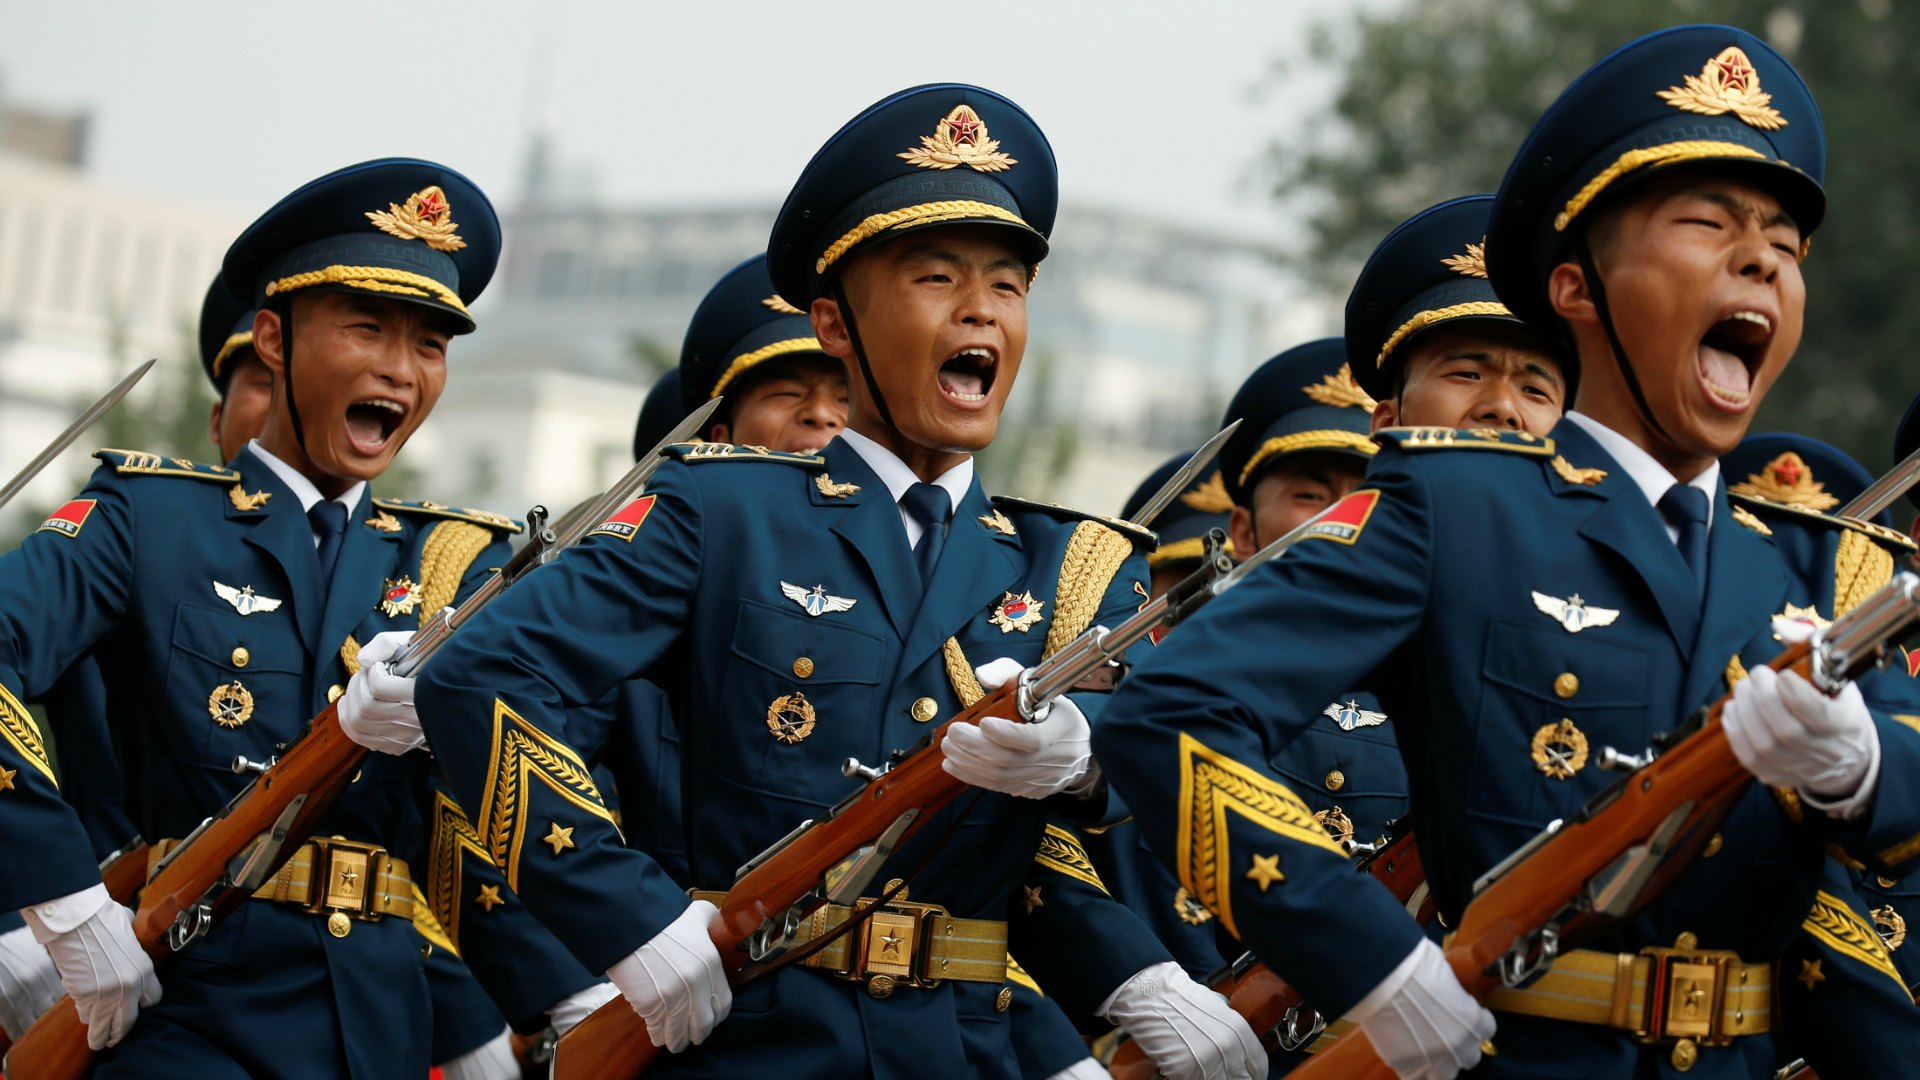 El Ejército chino quiere limitar la masturbación y los videojuegos entre sus reclutas